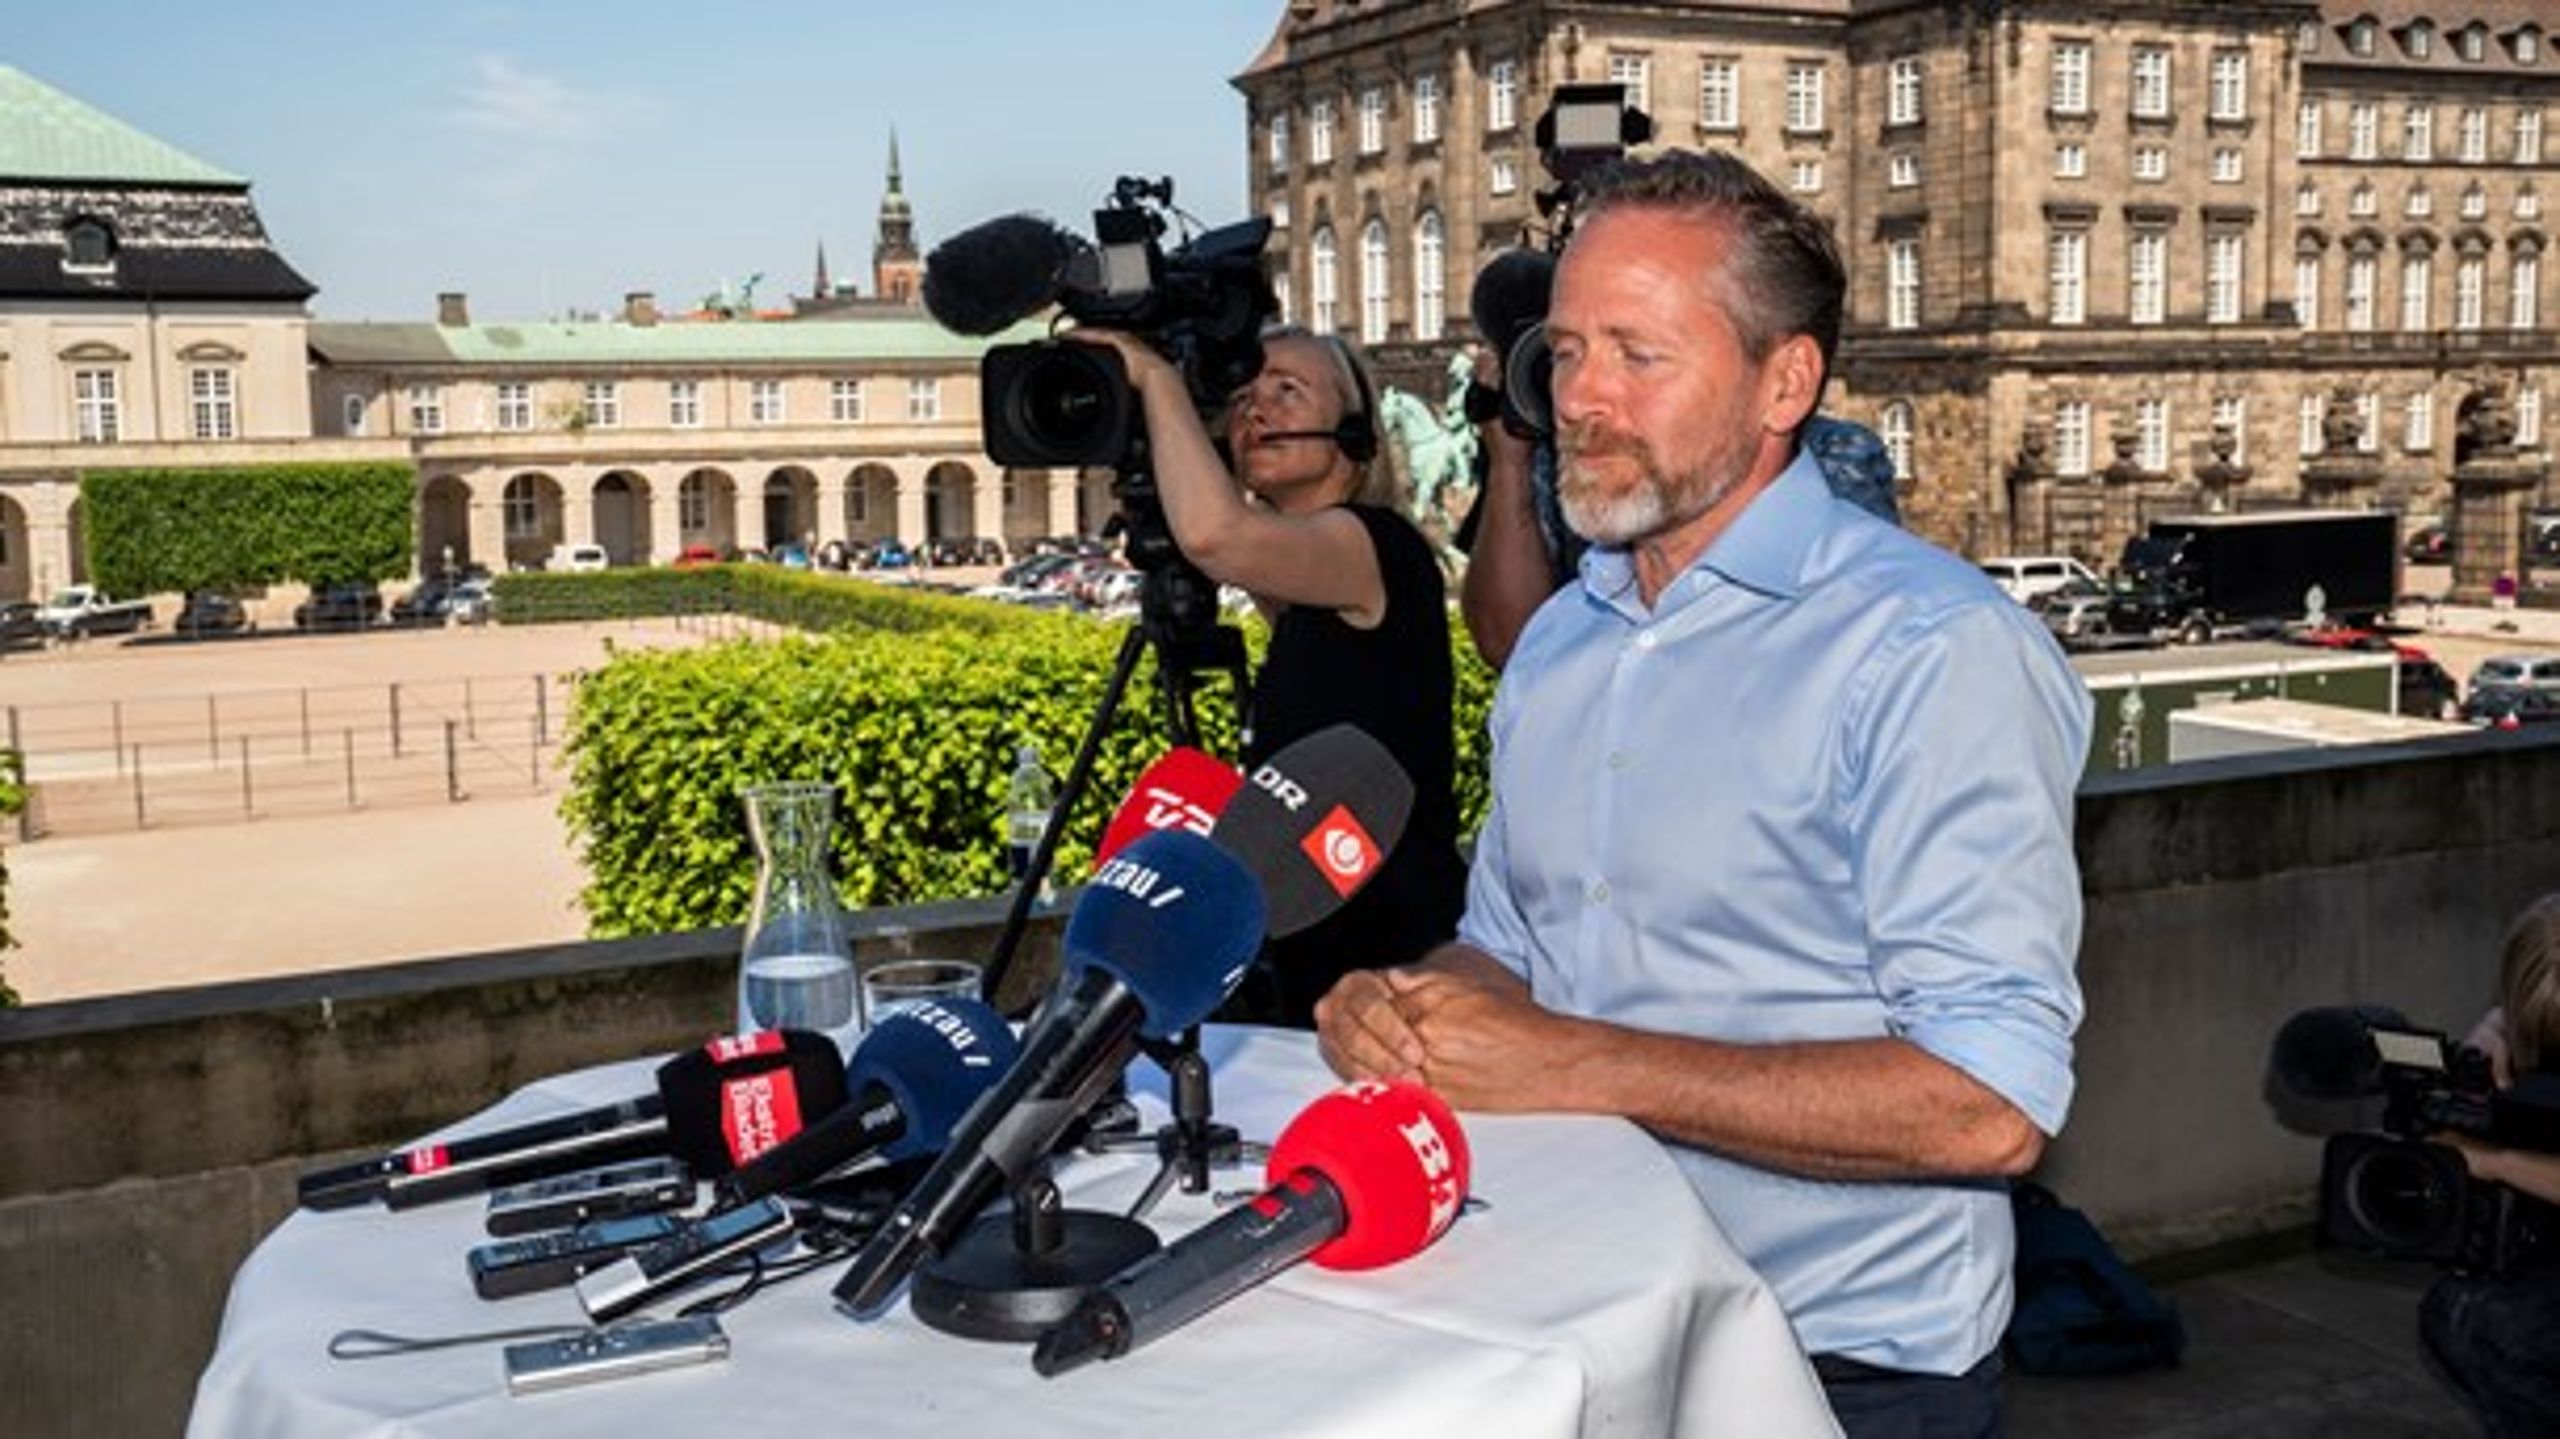 Partiet Liberal Alliance kunne på valgdagen ikke bestå vælgernes eksamination i seriøsitet og troværdighed, mener partimedlem Jesper Boman.